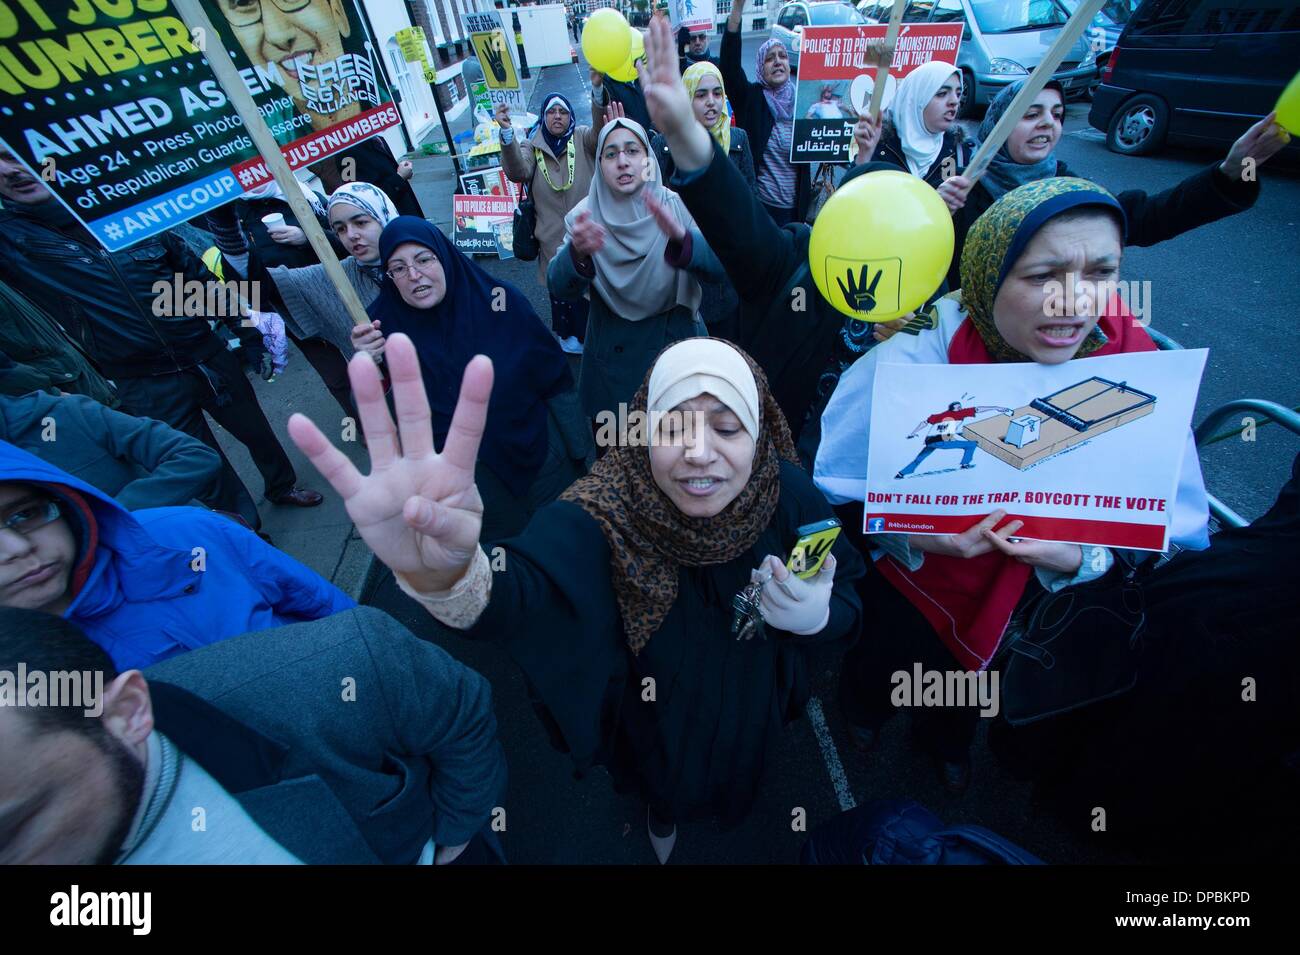 London, UK, UK. 11. Januar 2014. Pro-Mursi-Anhänger Kundgebung eine vor der ägyptischen Botschaft in London. Die Gruppe behauptet, dass sie weiterhin heftig durch das Militär ausgerichtet sein. Gail Orenstein/ZUMAPRESS.com/Alamy © Live-Nachrichten Stockfoto